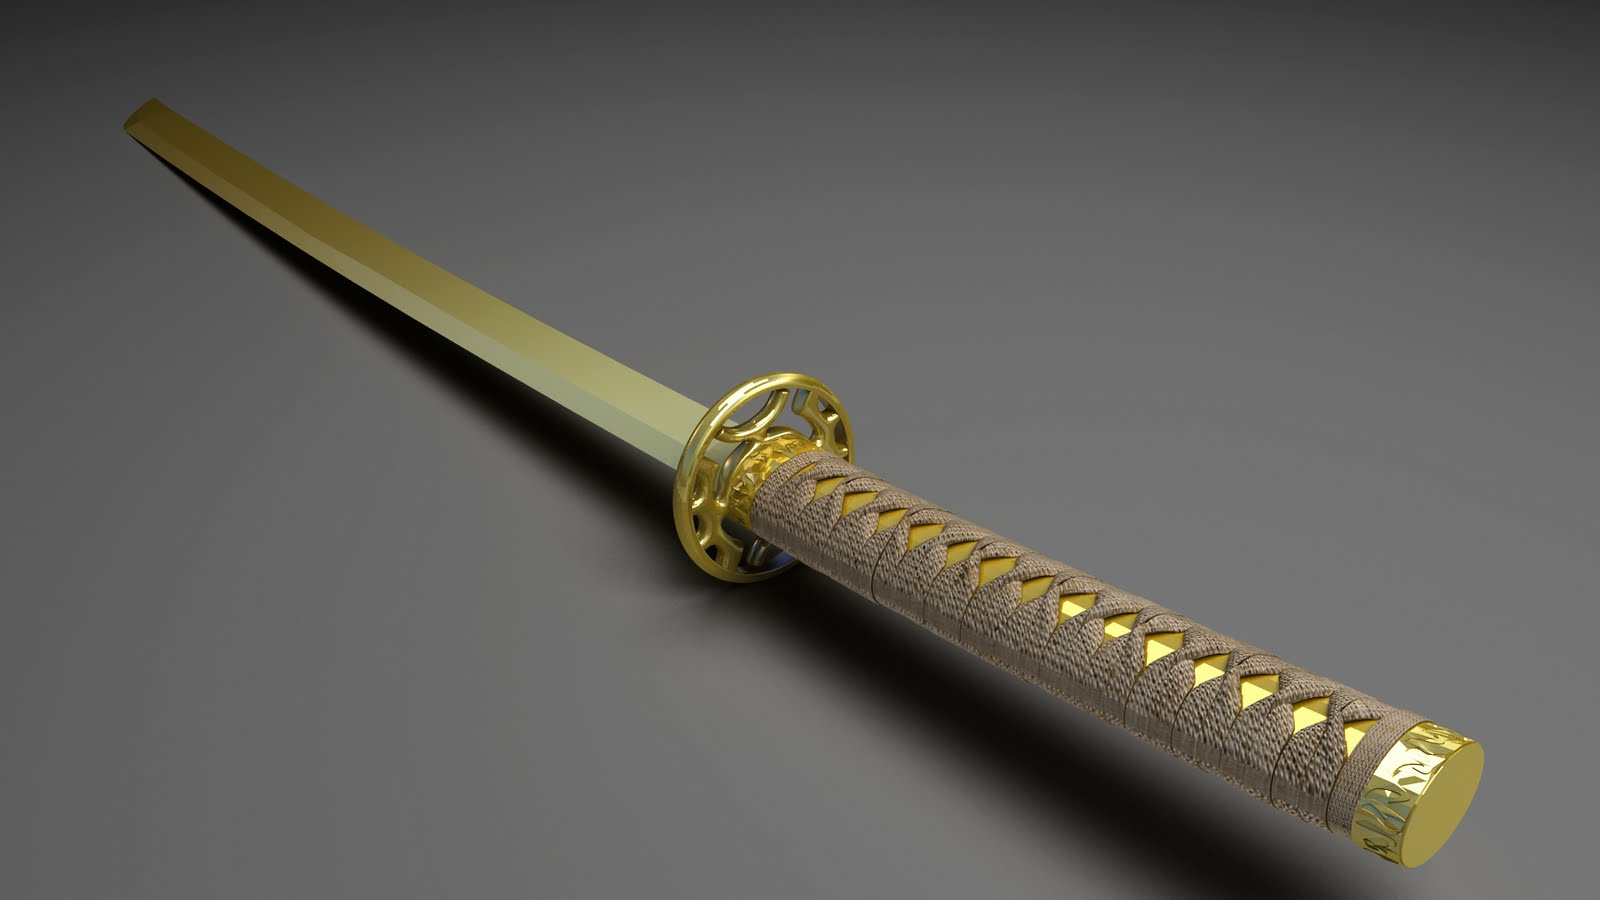 Родные руки стальные мечи золотые кресты. Золотая катана японский меч. Катана, самурайский меч "золотой дракон". Голд Сворд. Катана, самурайский меч "золотой дракон" Ryuichi Swords.